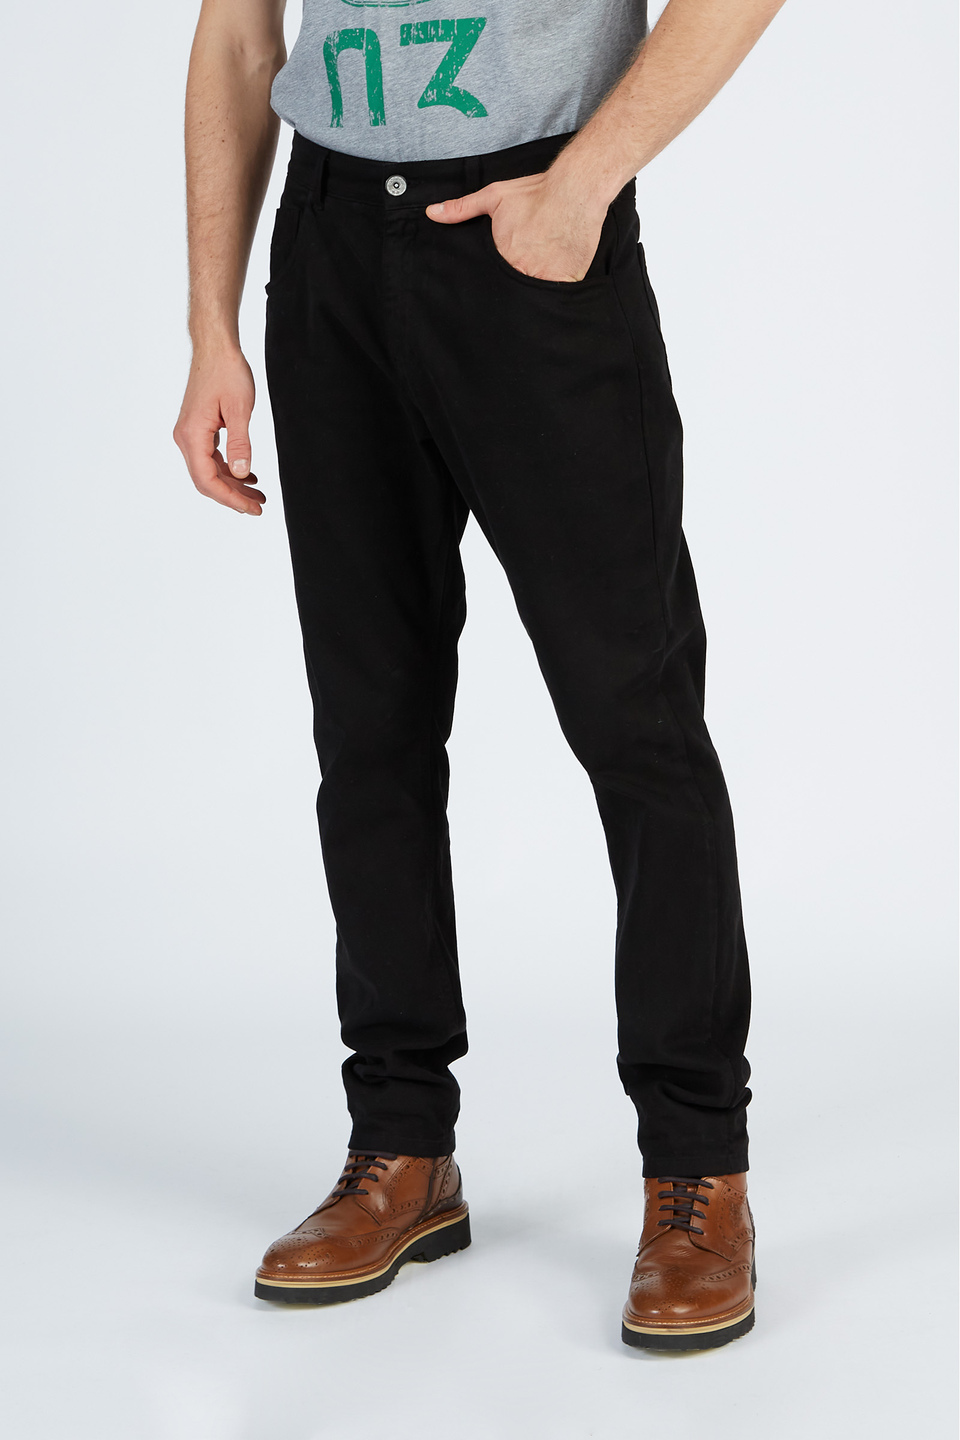 Pantalone da uomo in cotone stretch modello chino regular fit | La Martina - Official Online Shop